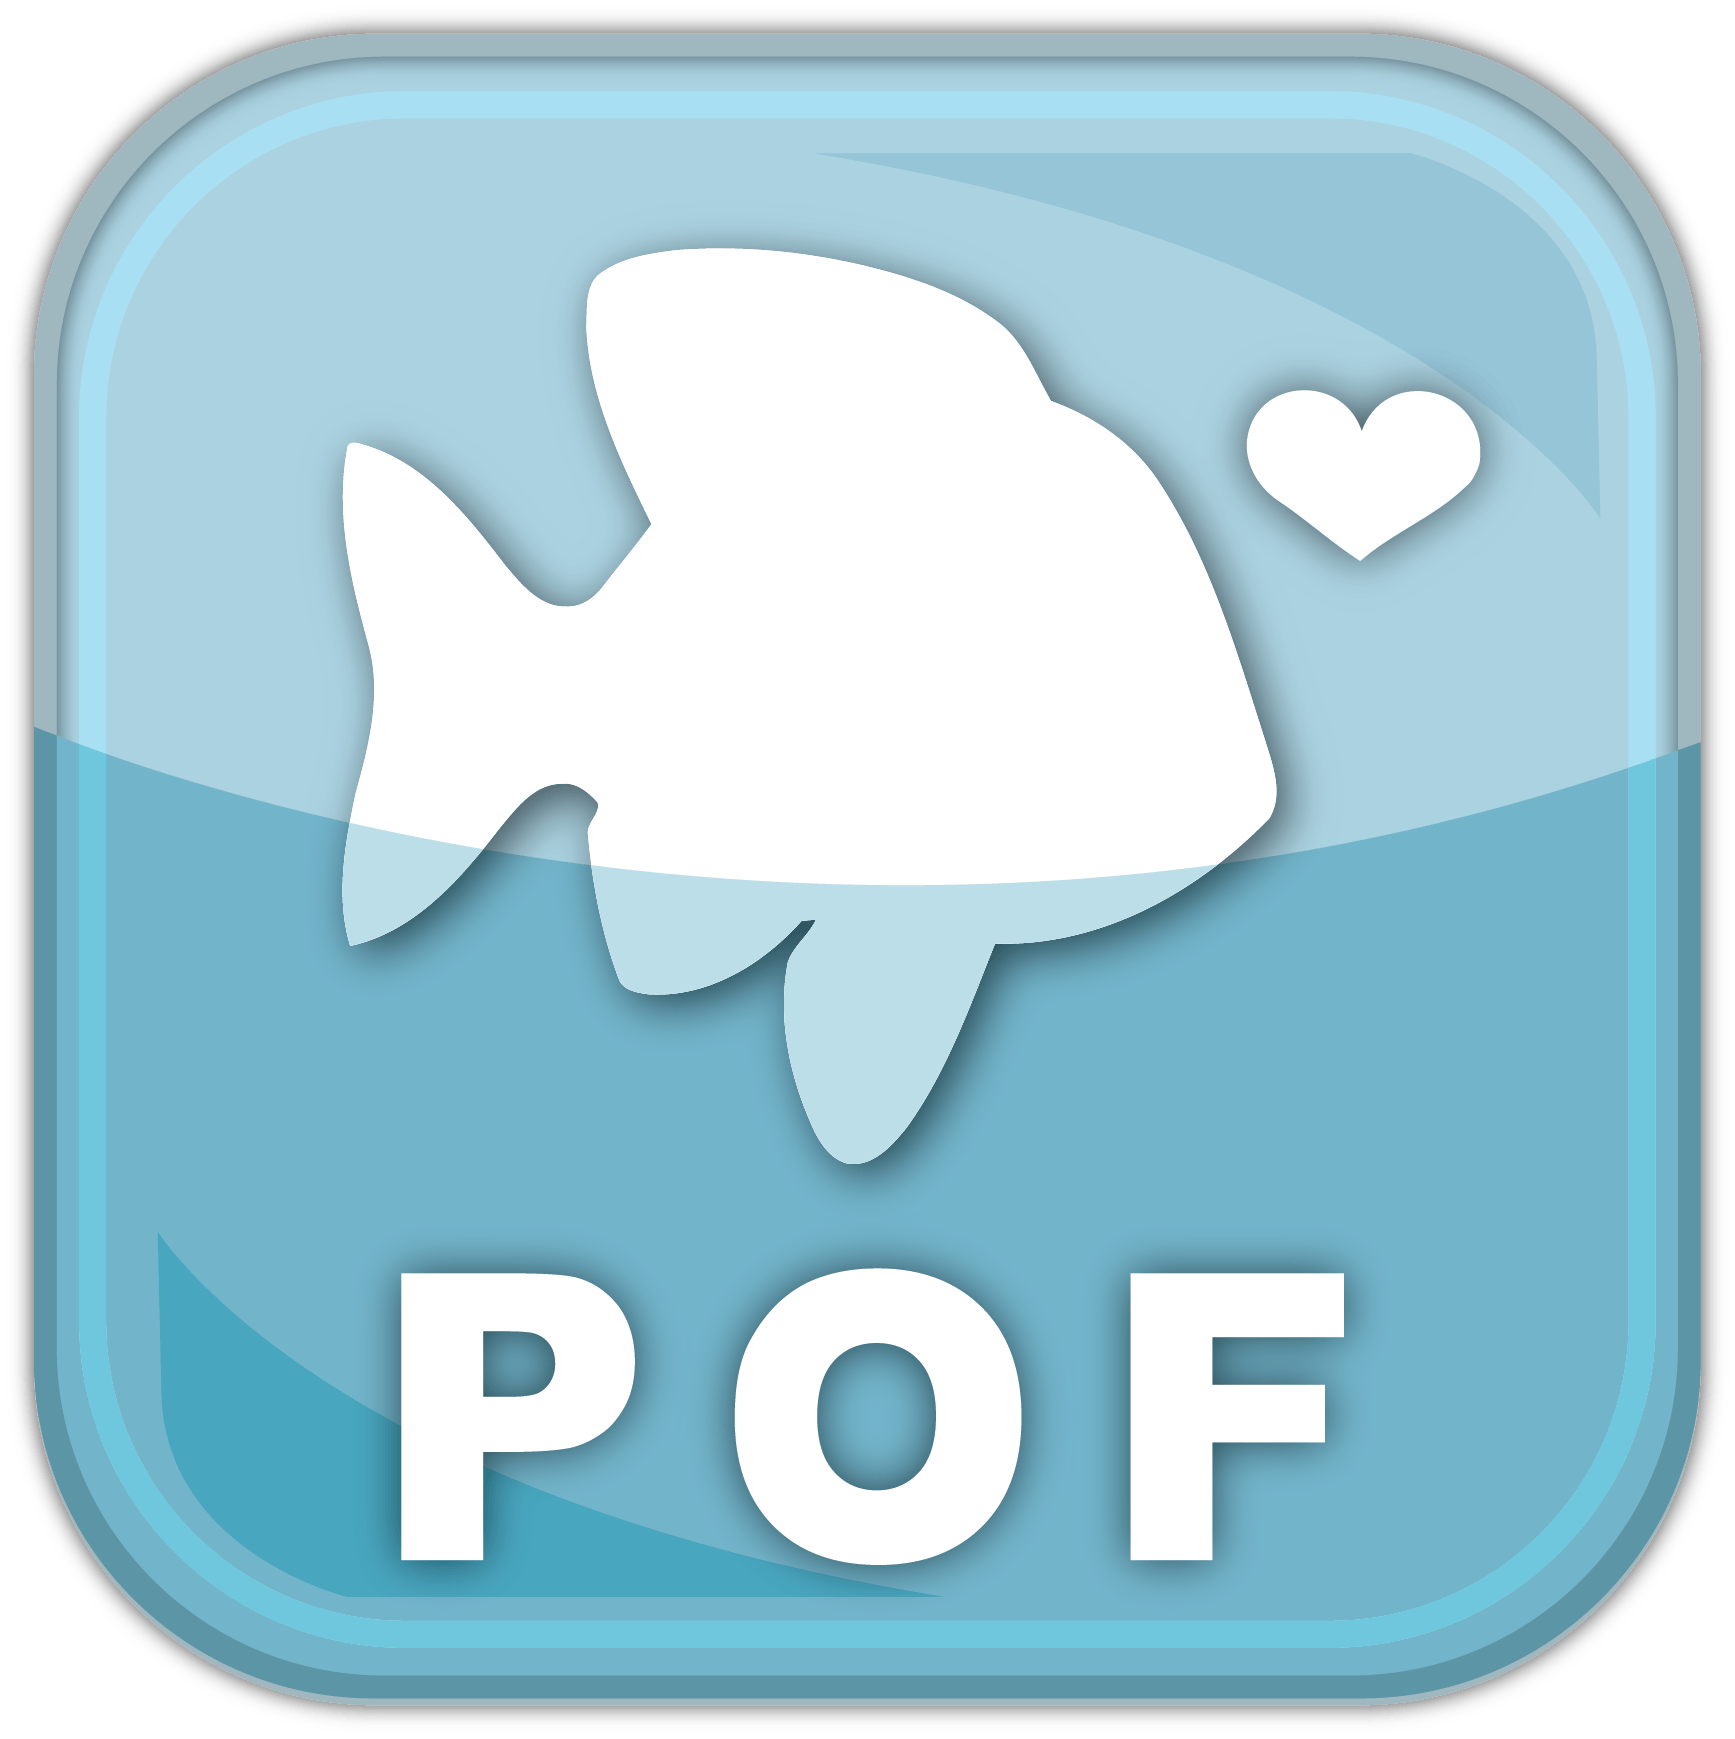 POF Logo - POF Review August 2019: Legit Site or Legit Scam? - DatingScout.com